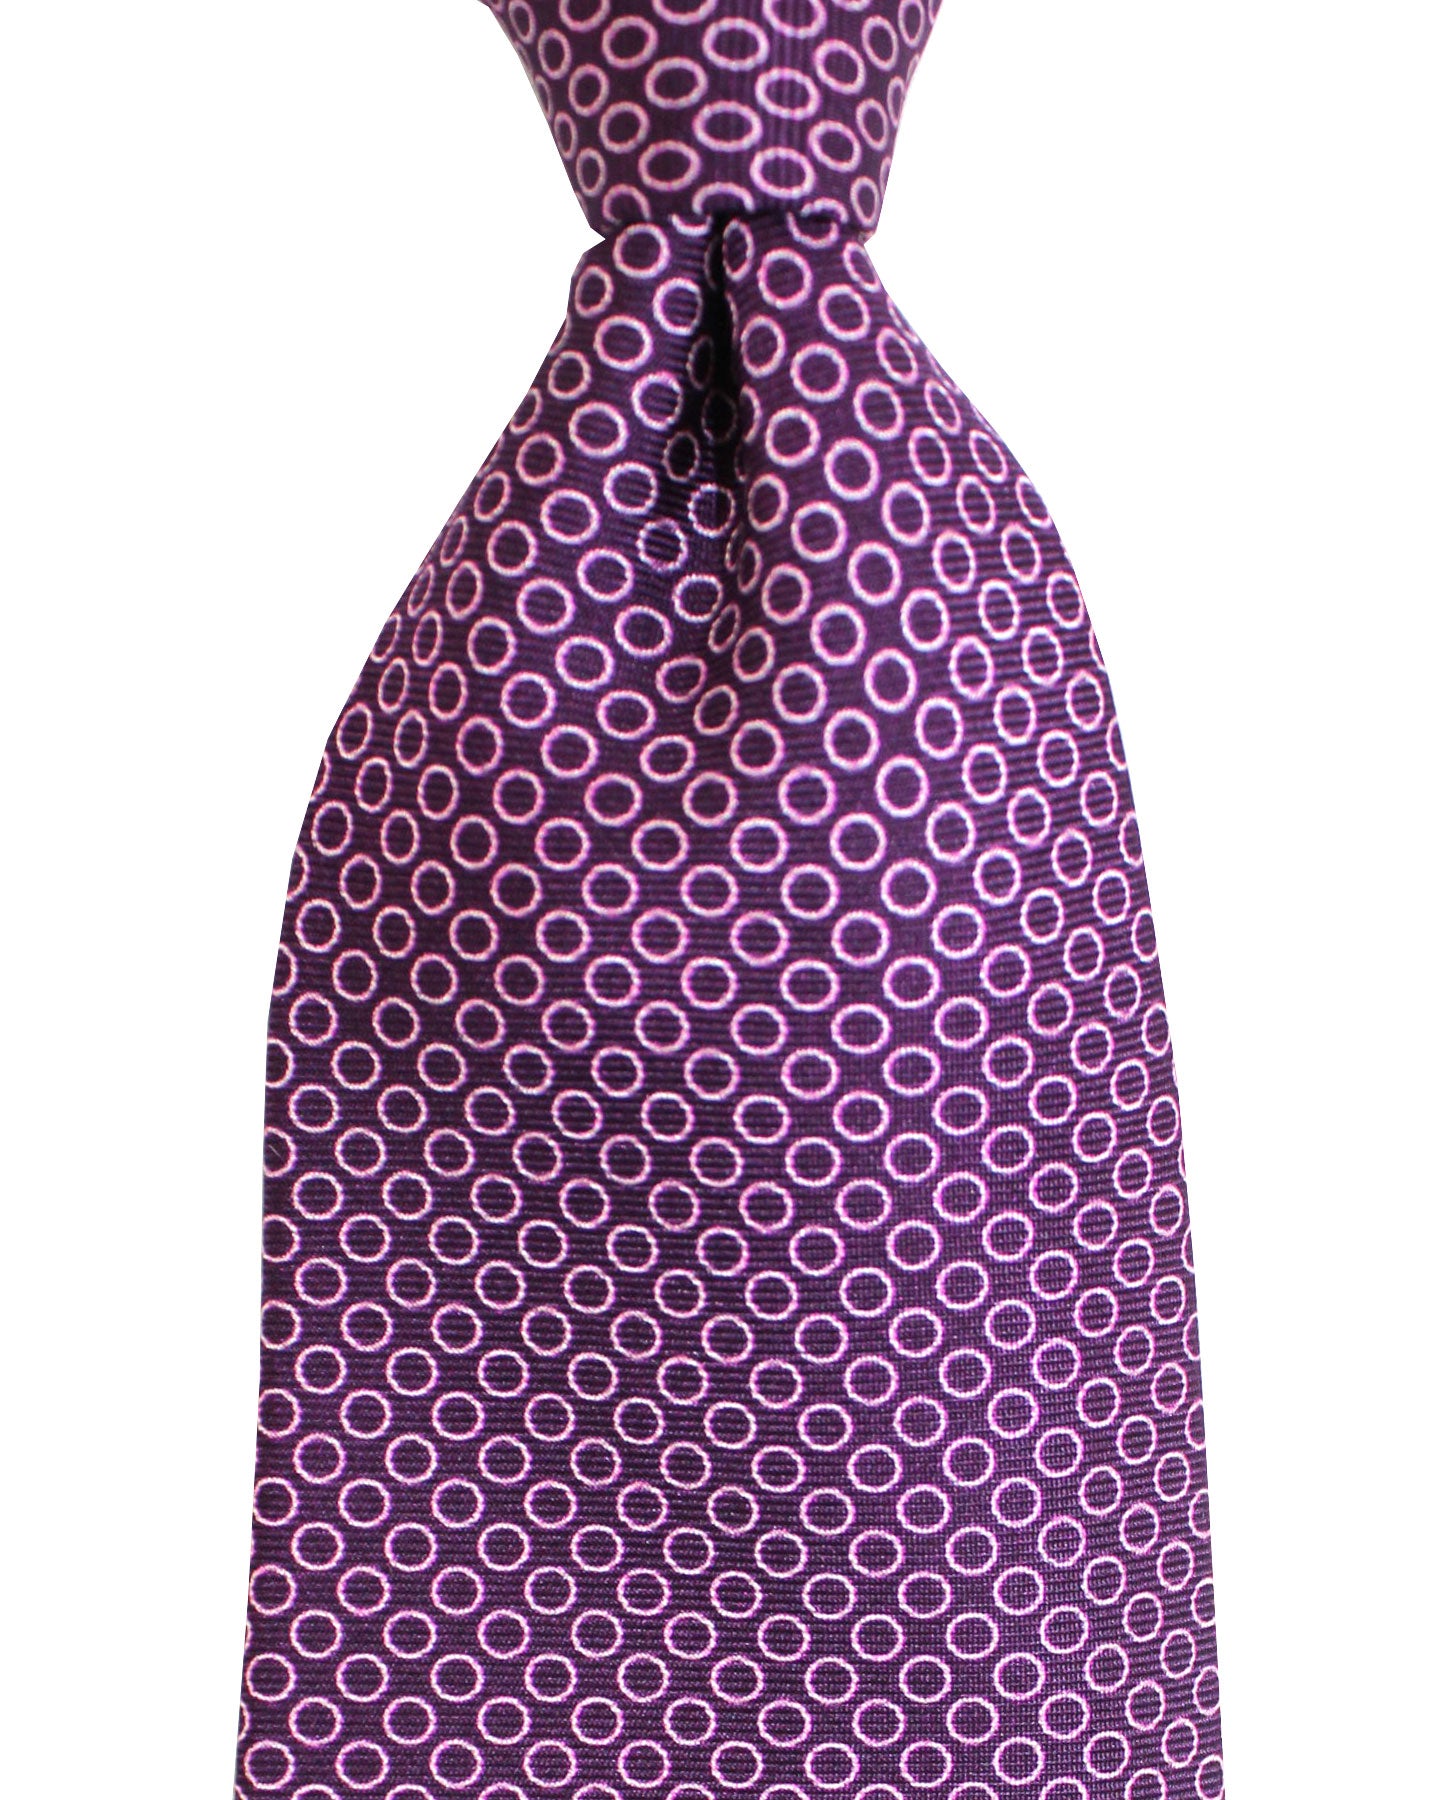 E. Marinella Silk Tie Classic Purple Circles